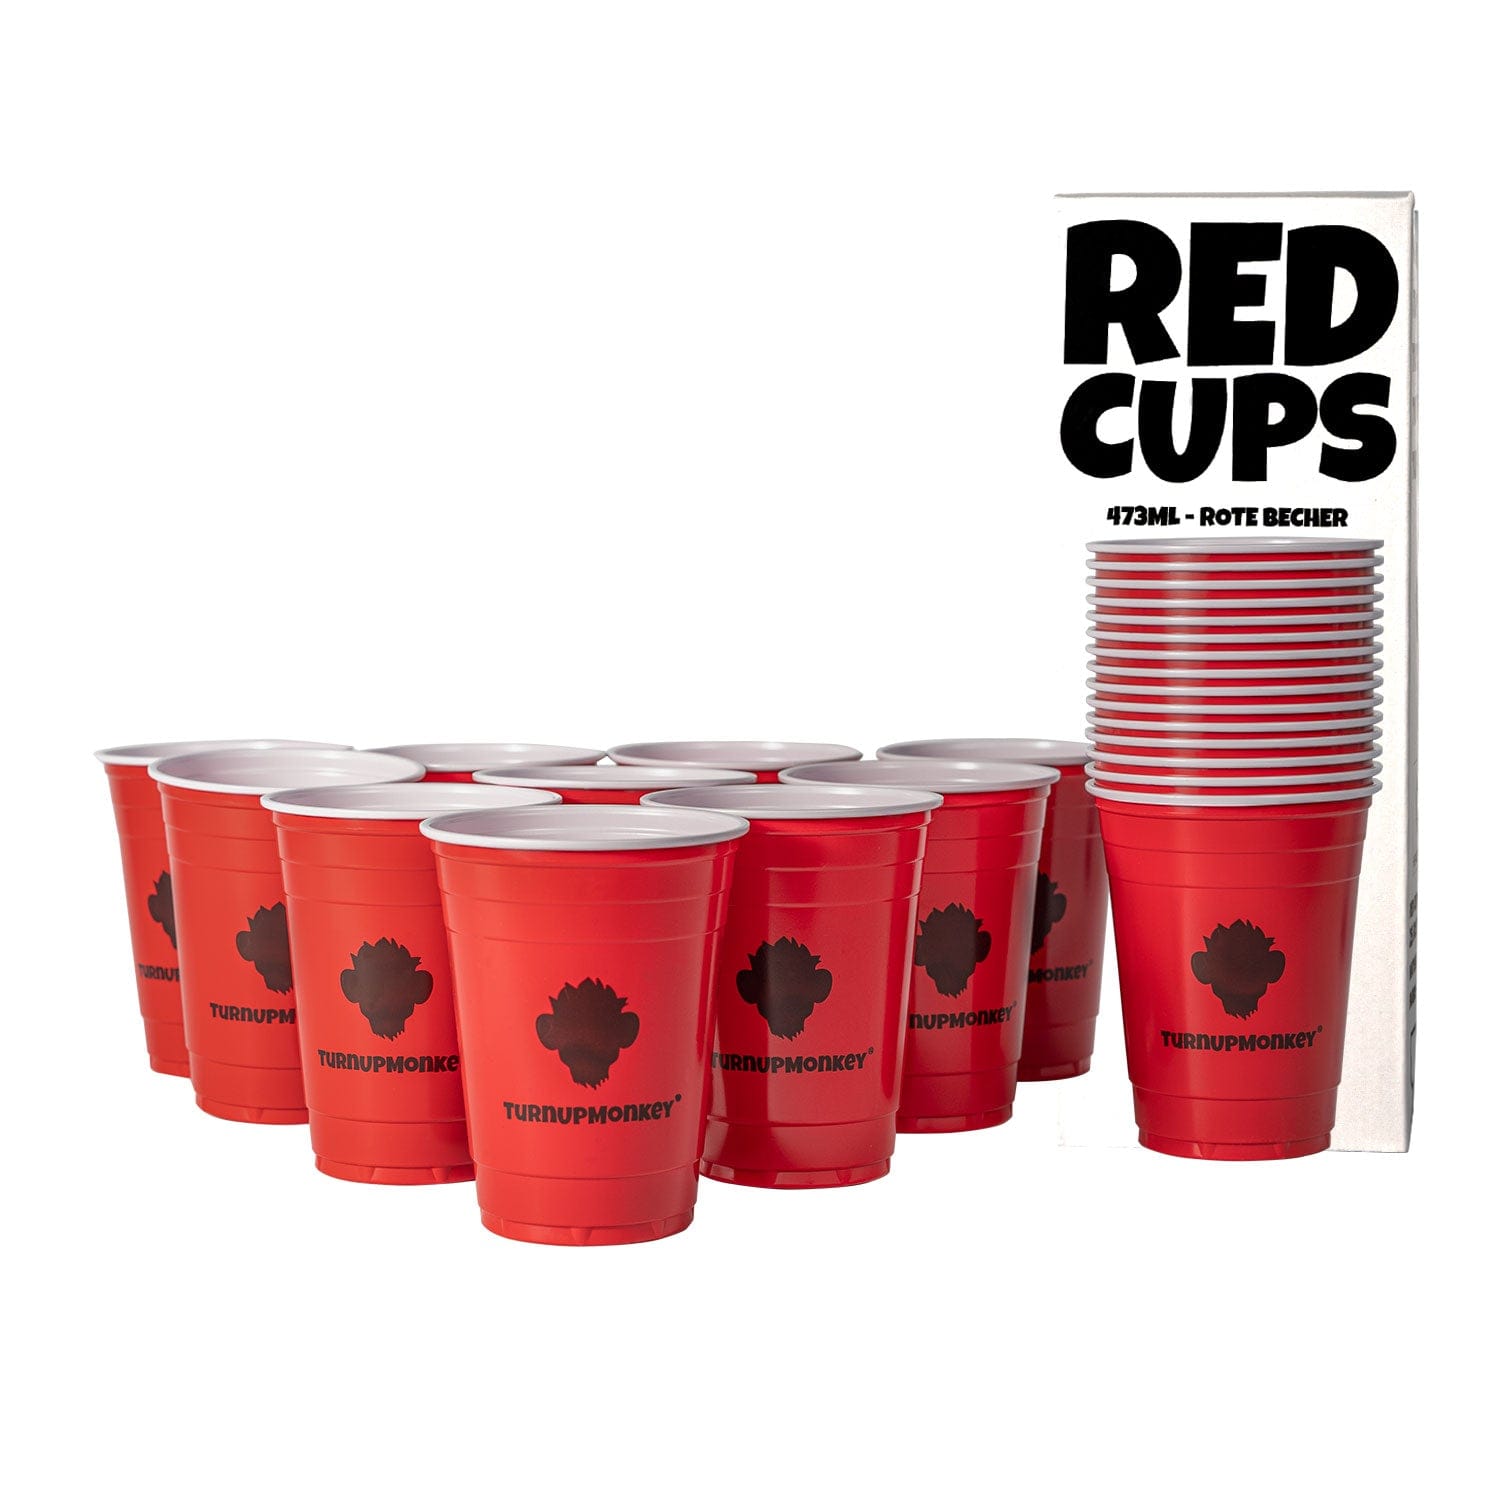 Redcups von Turnupmonkey